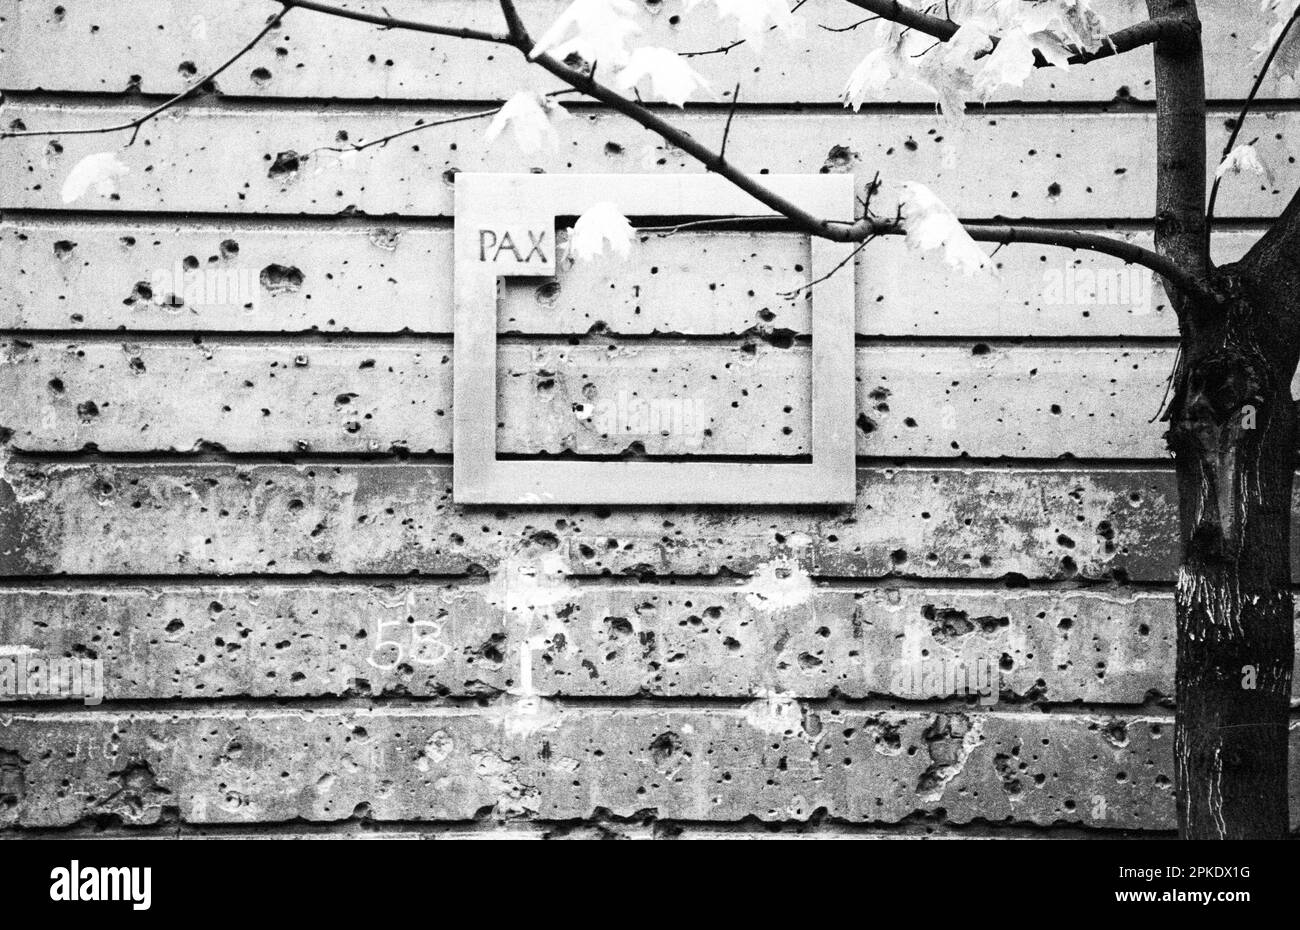 Allemagne de l'est, ancien GDR, Berlin de l'est, œuvres d'art, mur de maison avec trous tirés de balles de la bataille finale entre l'Armée rouge soviétique et les soldats nazis allemands en 1945 pendant la Seconde Guerre mondiale, cadre avec le mot paix PAX, image historique noir et blanc tourné sur film de 35 mm Banque D'Images